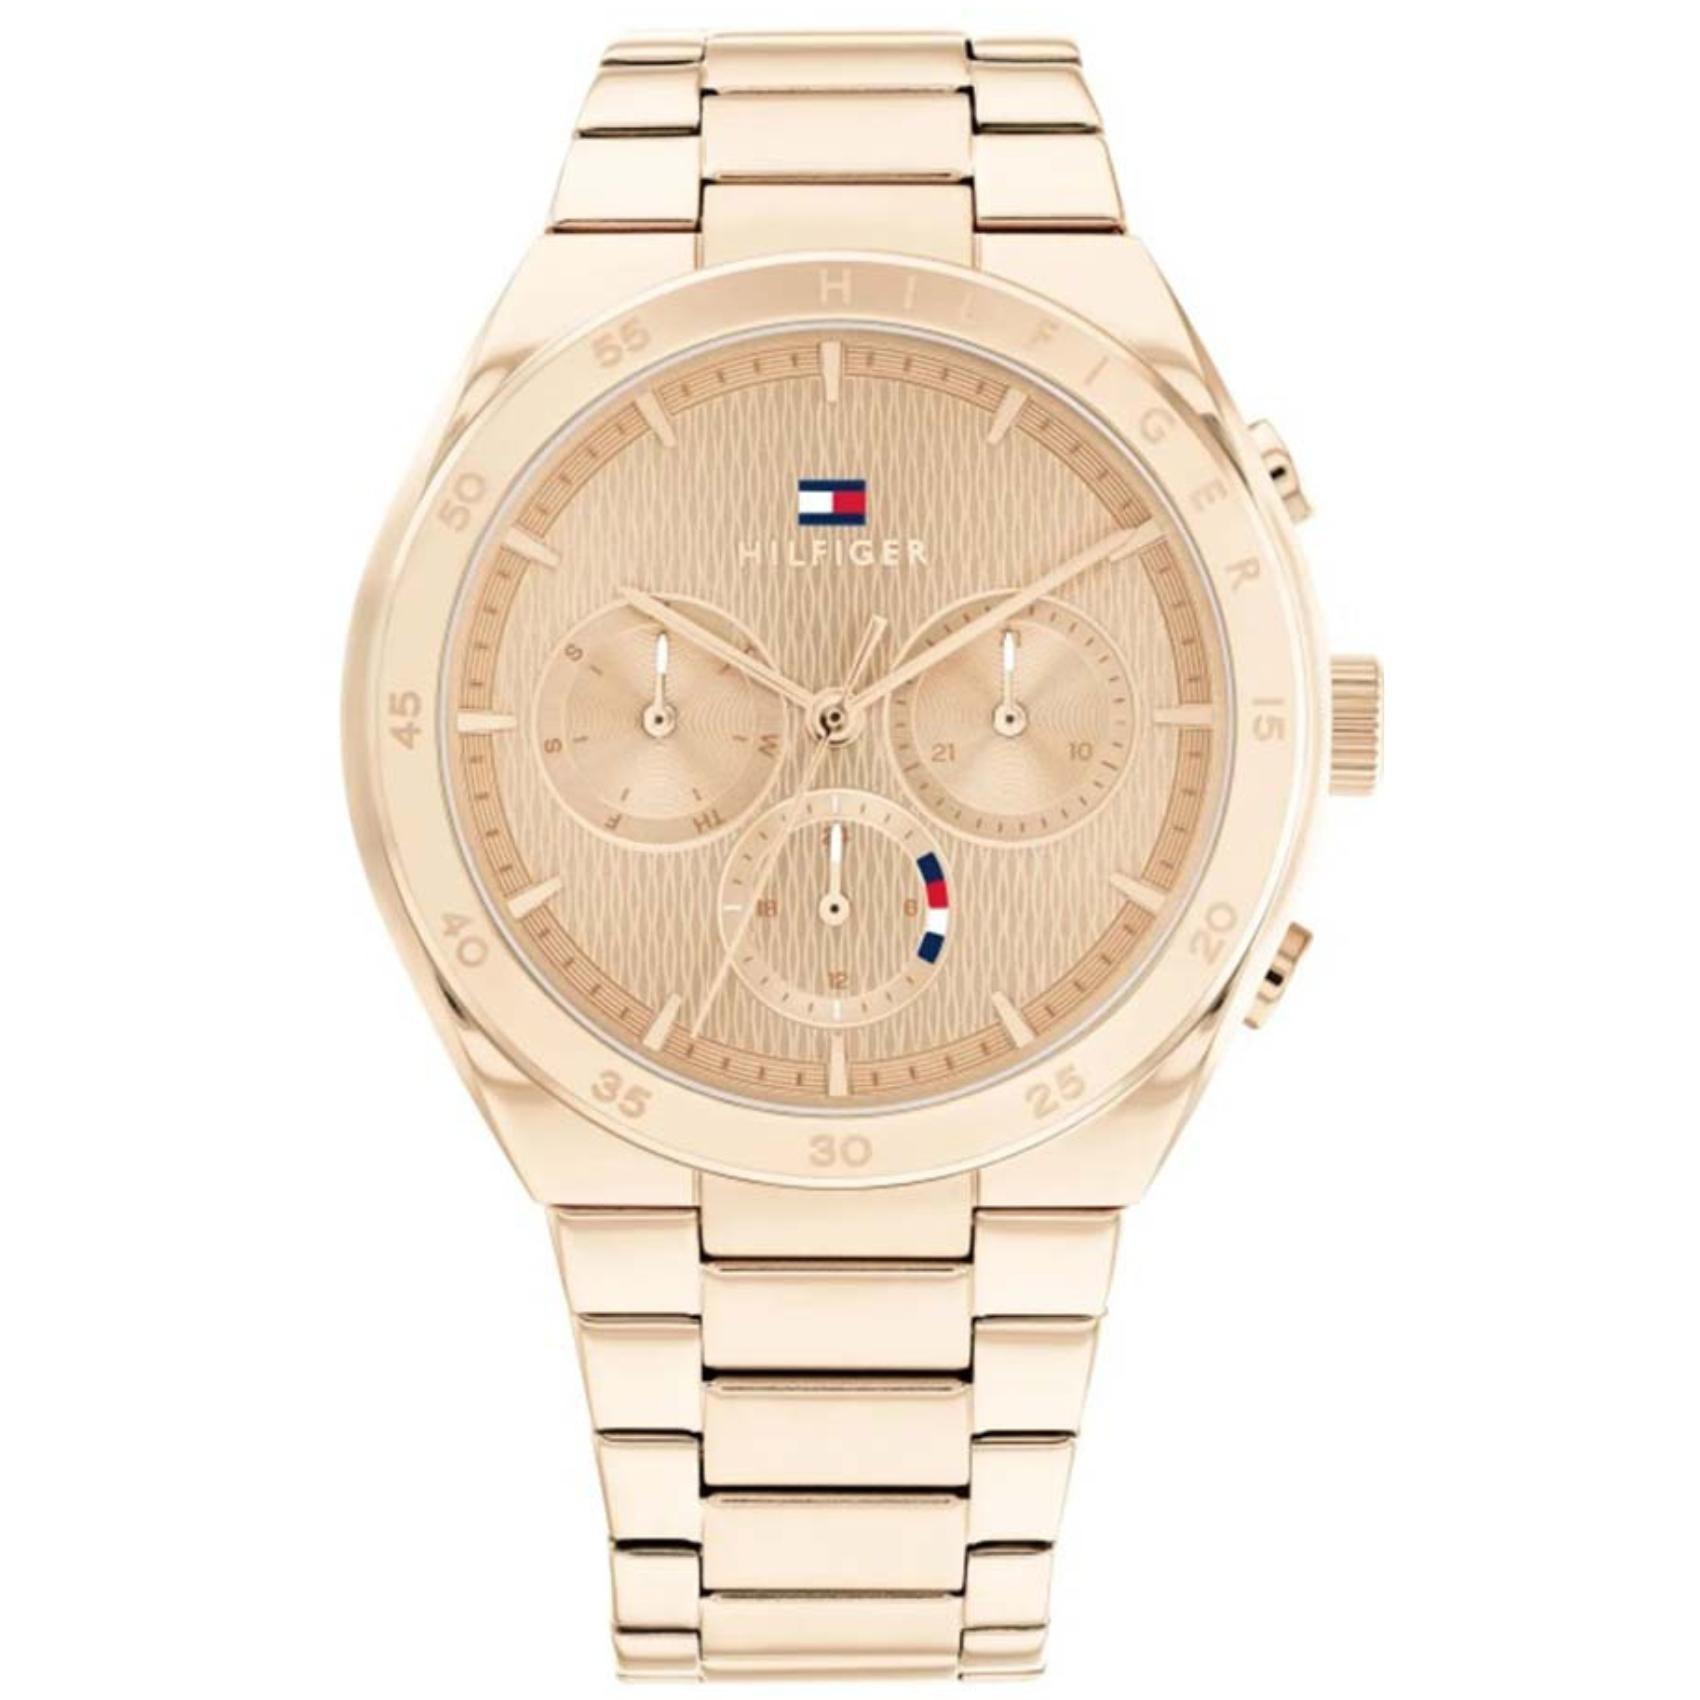 Γυναικείο ρολόι Tommy Hilfiger Carrie 1782577 με ροζ χρυσό ατσάλινο μπρασελέ και ροζ χρυσό καντράν διαμέτρου 38mm με ημέρα-ημερομηνία.